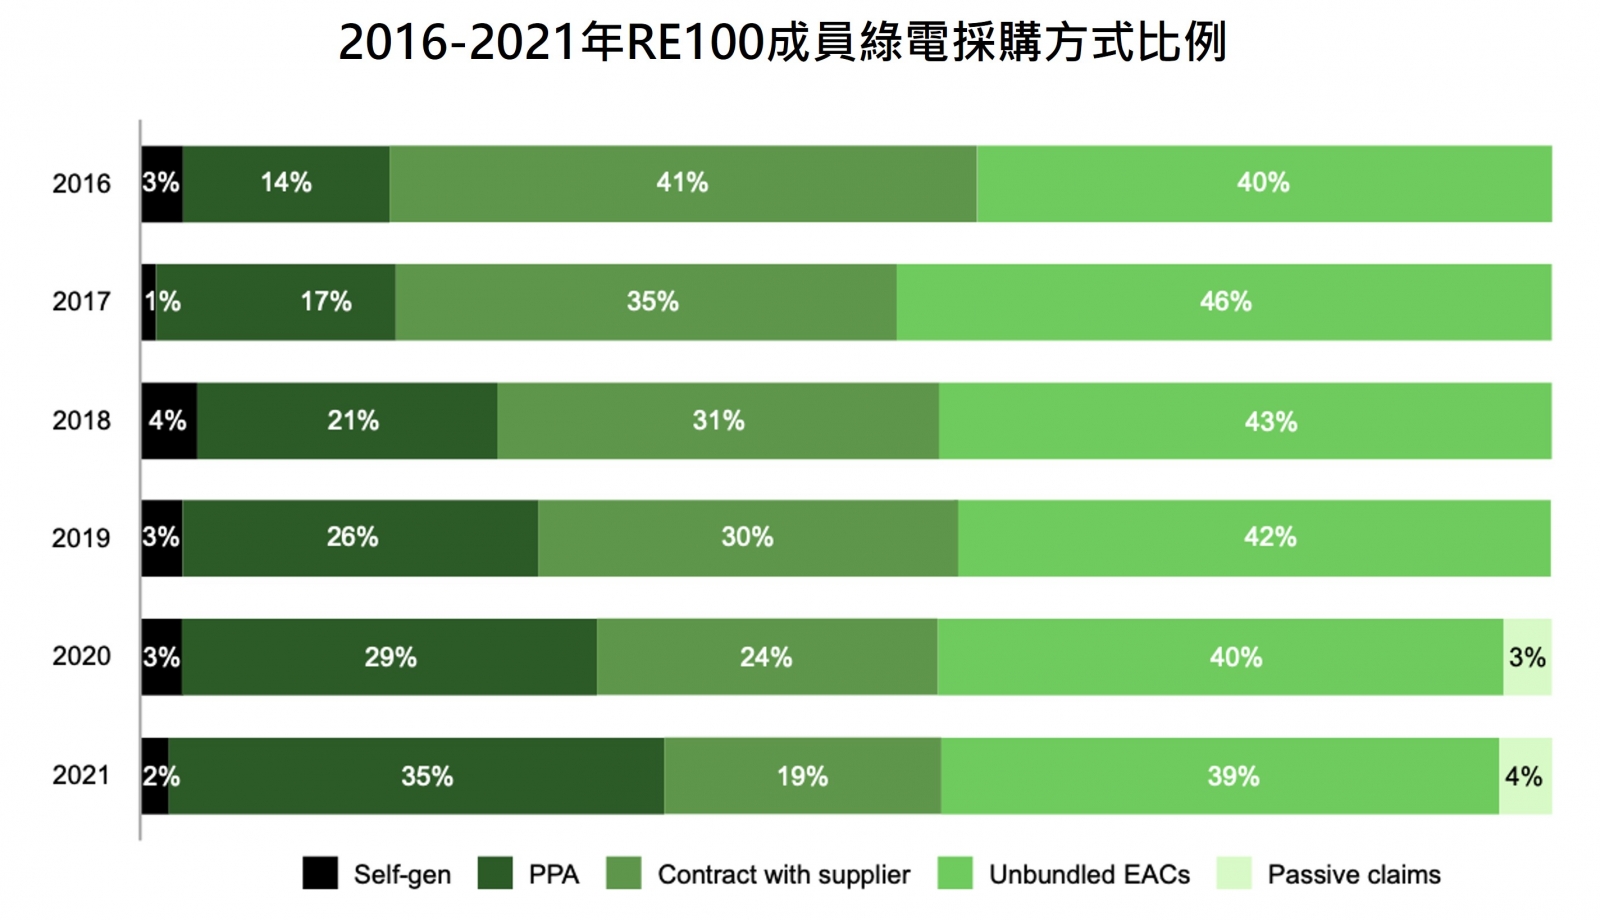 2016-2021年RE100成員綠電採購方式比例 